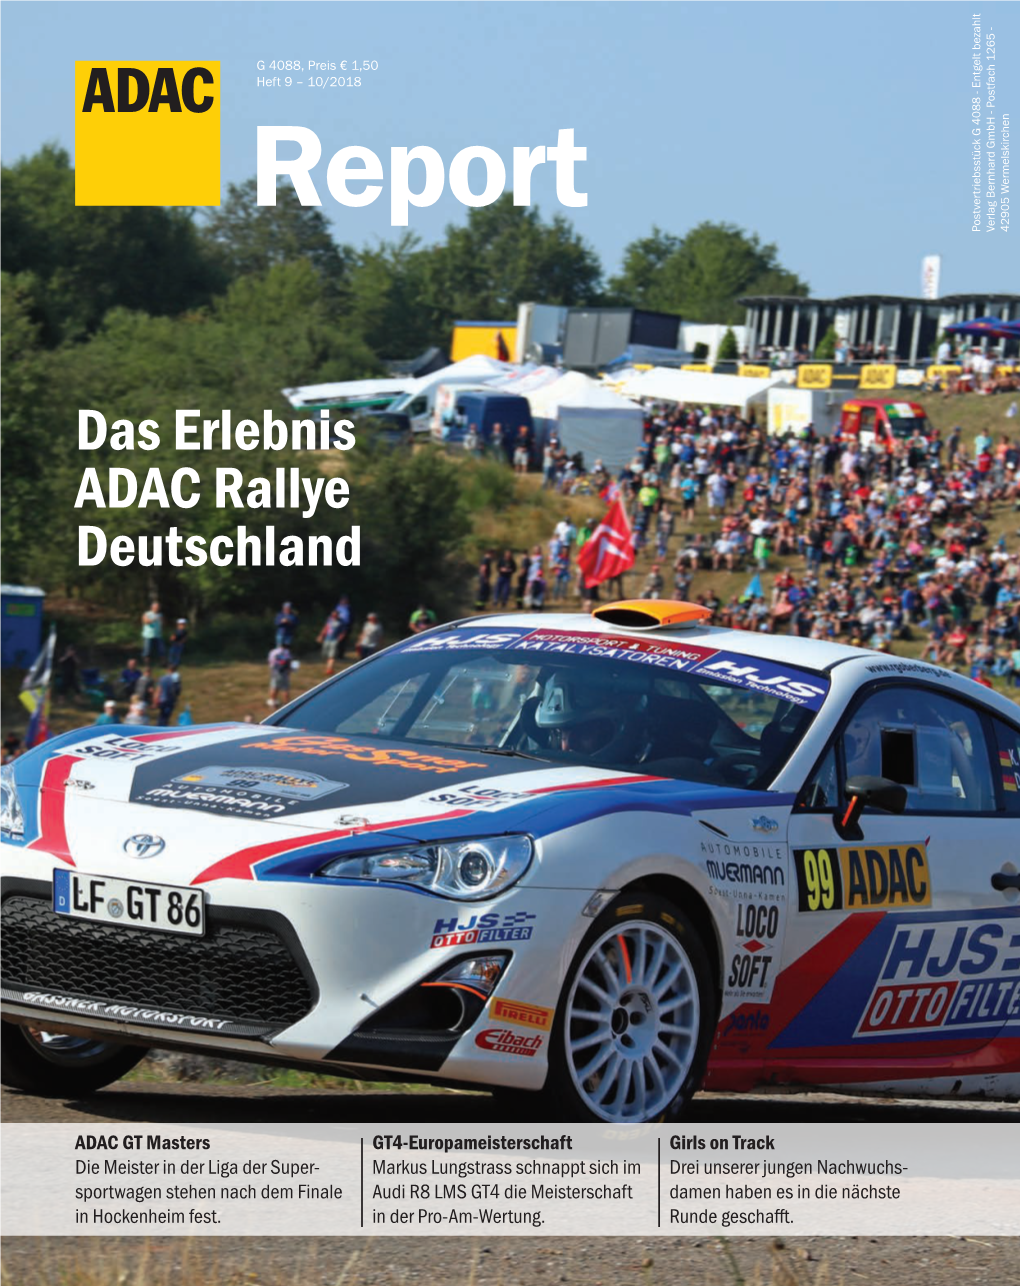 Das Erlebnis ADAC Rallye Deutschland